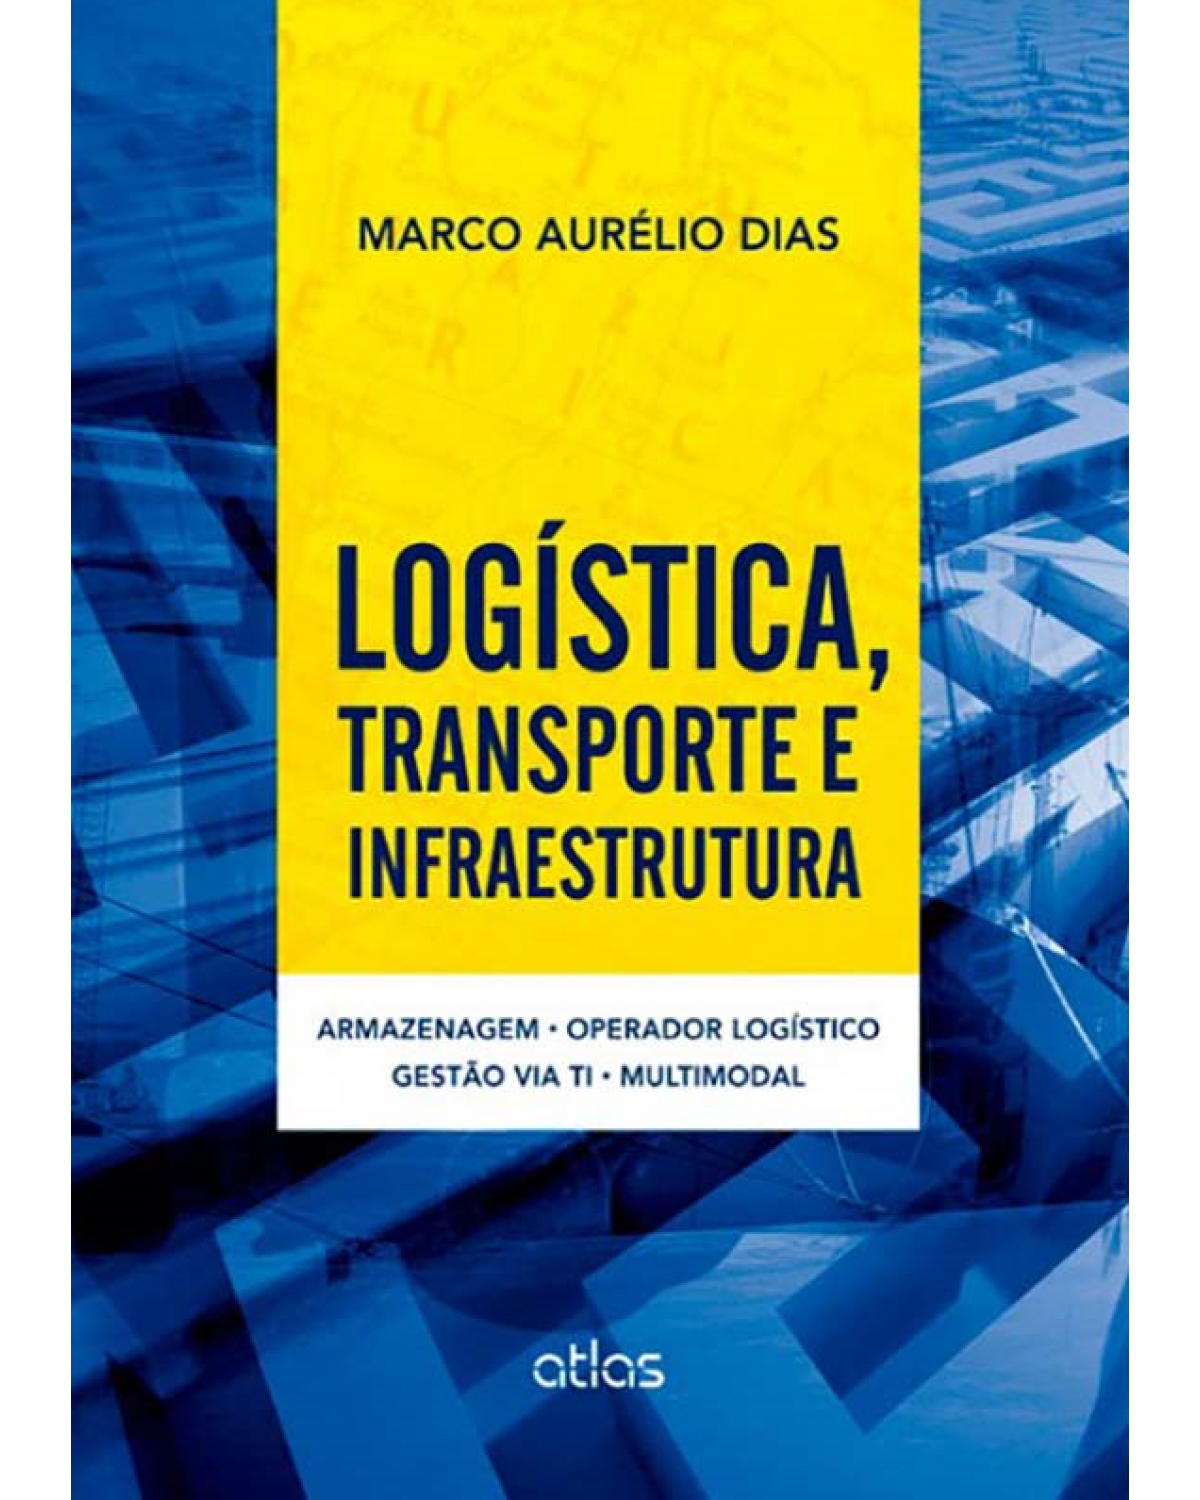 Logística, transporte e infraestrutura - Armazenagem, operador logístico, gestão via TI, multimodal - 1ª Edição | 2012